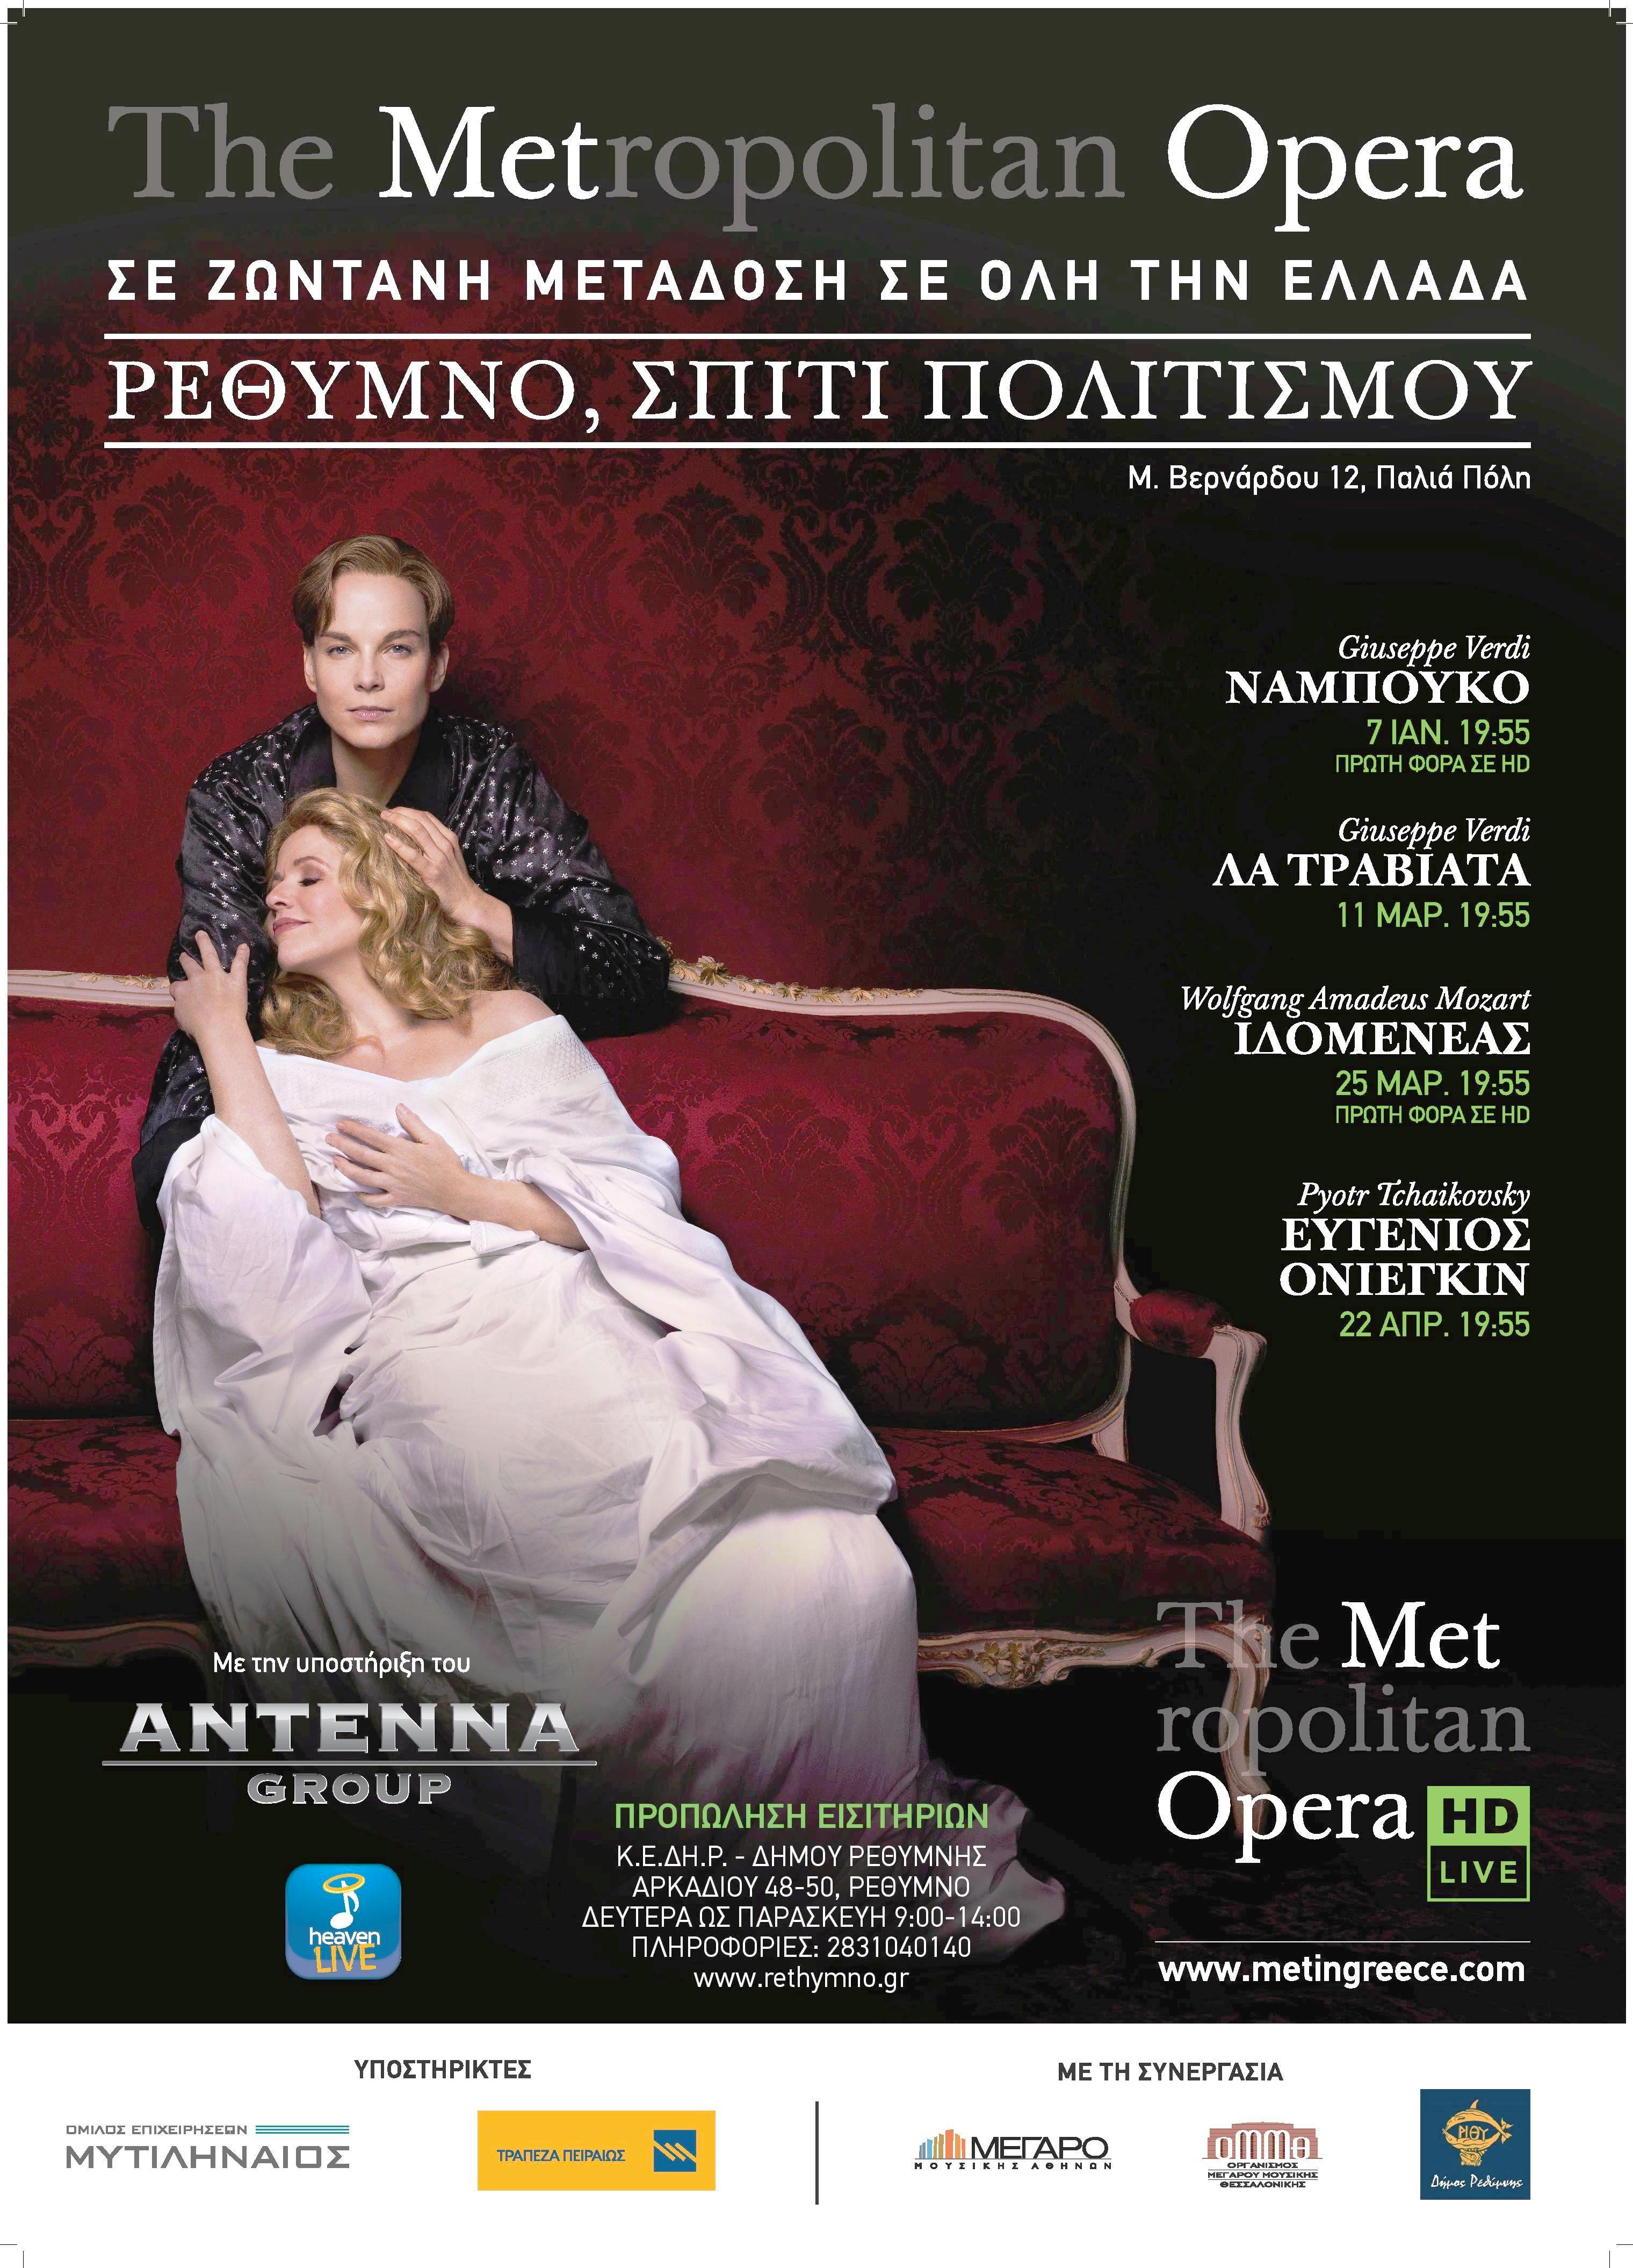 Οι προγραμματισμένες live μεταδόσεις της ΜΕΤ Όπερα στο Ρέθυμνο